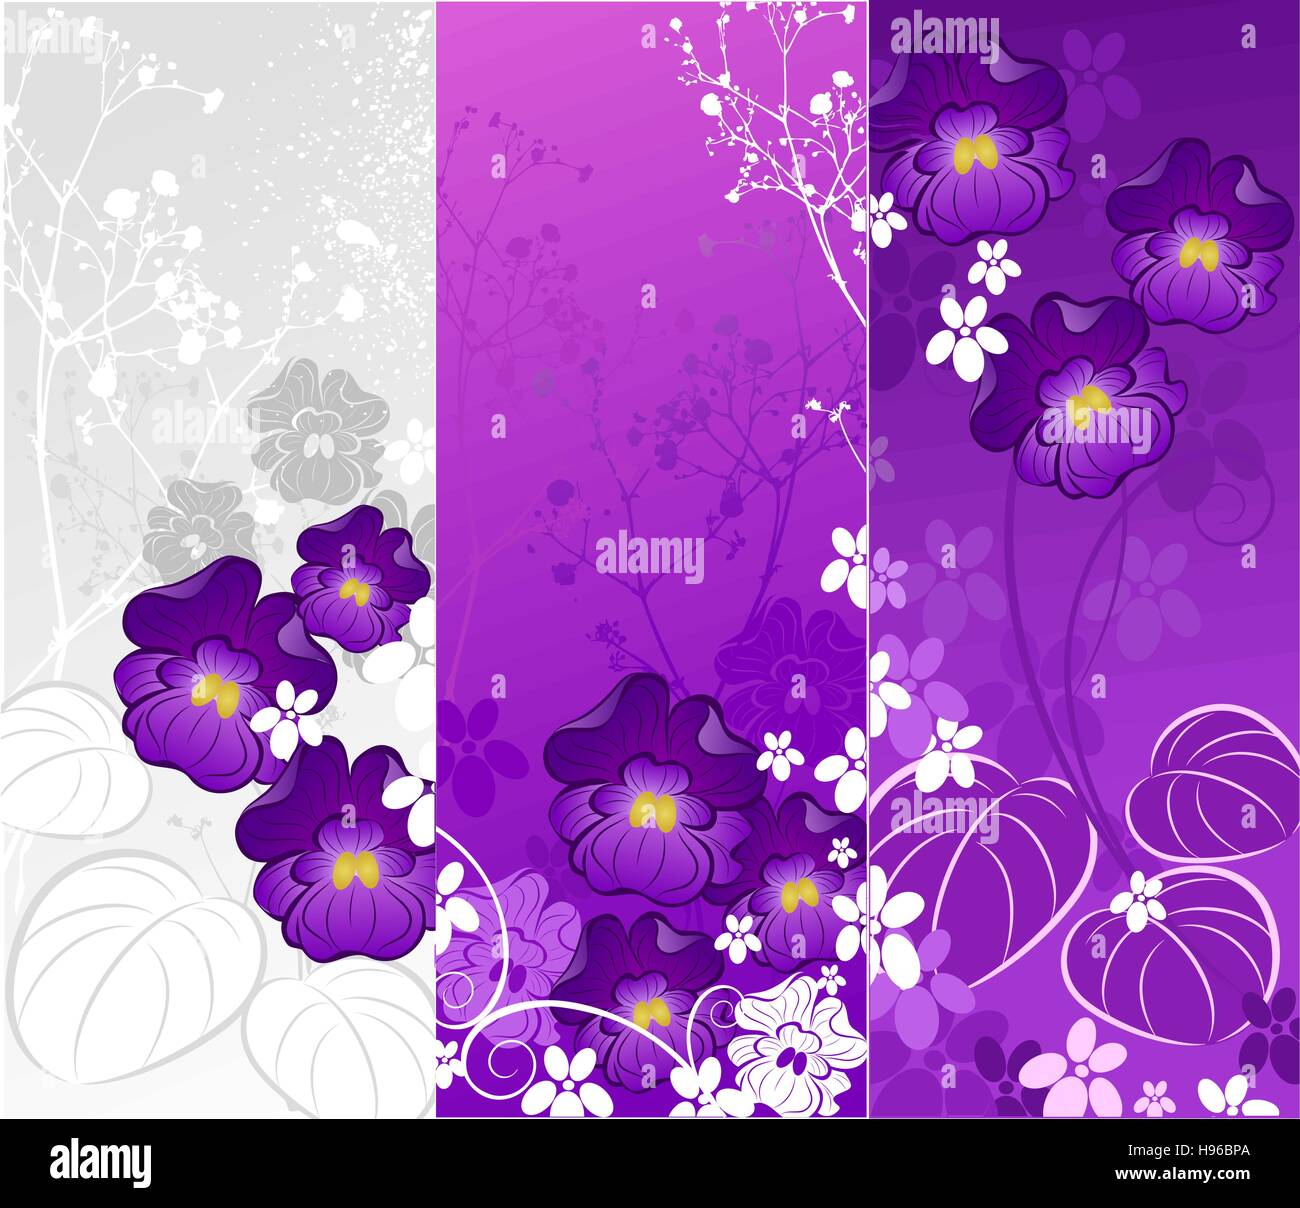 Drei banner mit einem stilisierten künstlerischen Veilchen und Zierpflanzen auf weiß und lila Hintergrund gemalt. Stock Vektor